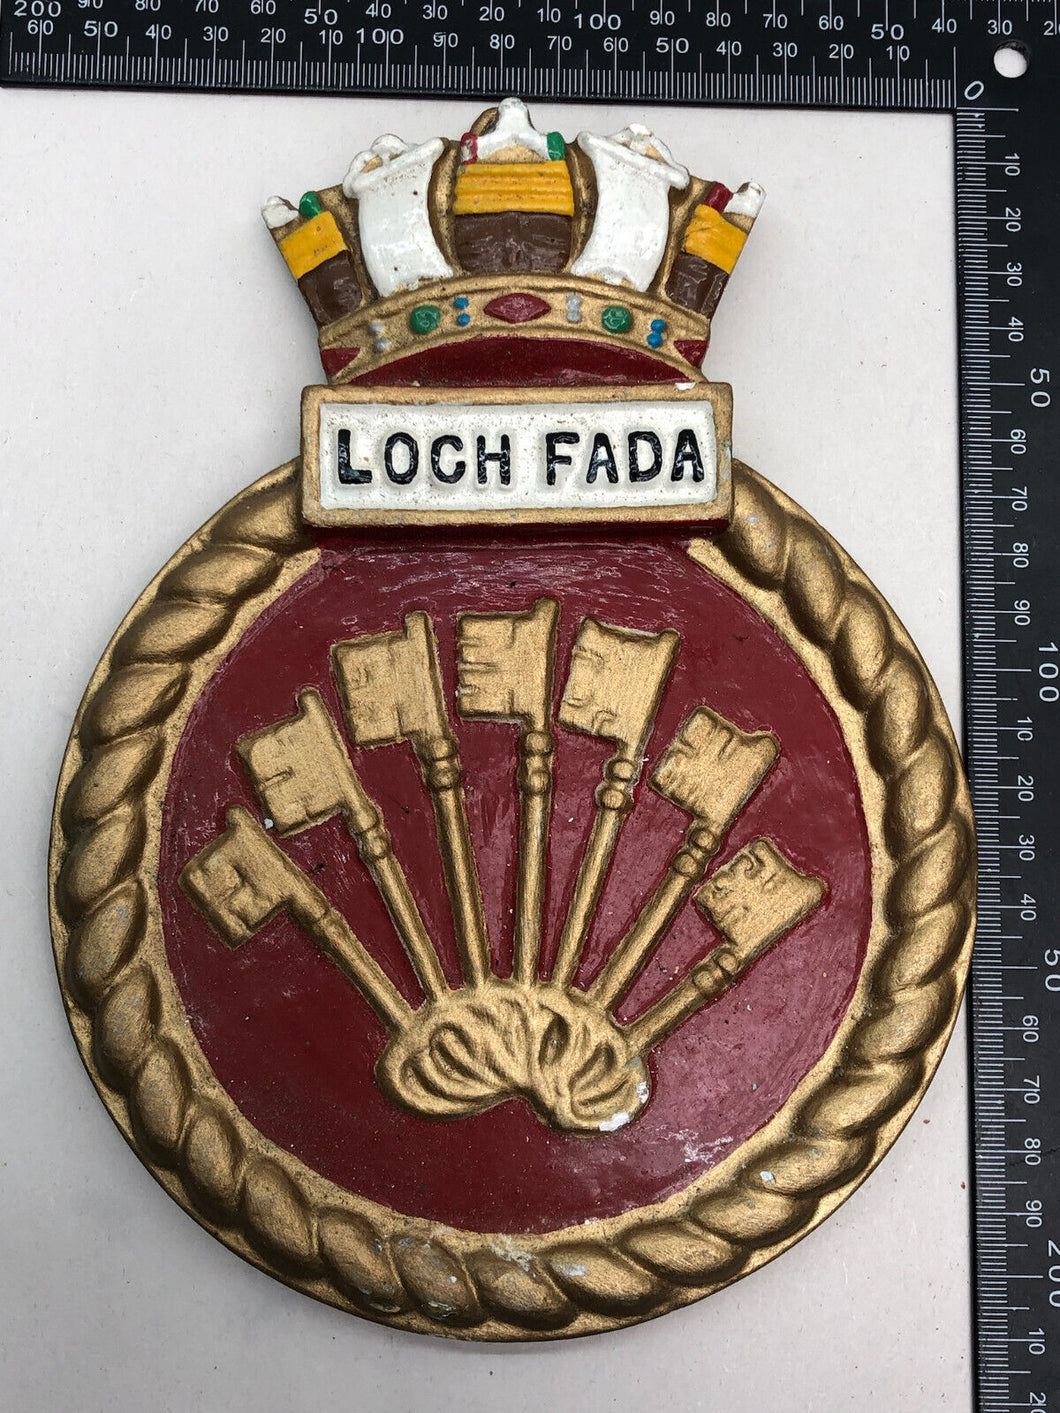 Original British Royal Navy HMS Loch Fada Wall Plaque